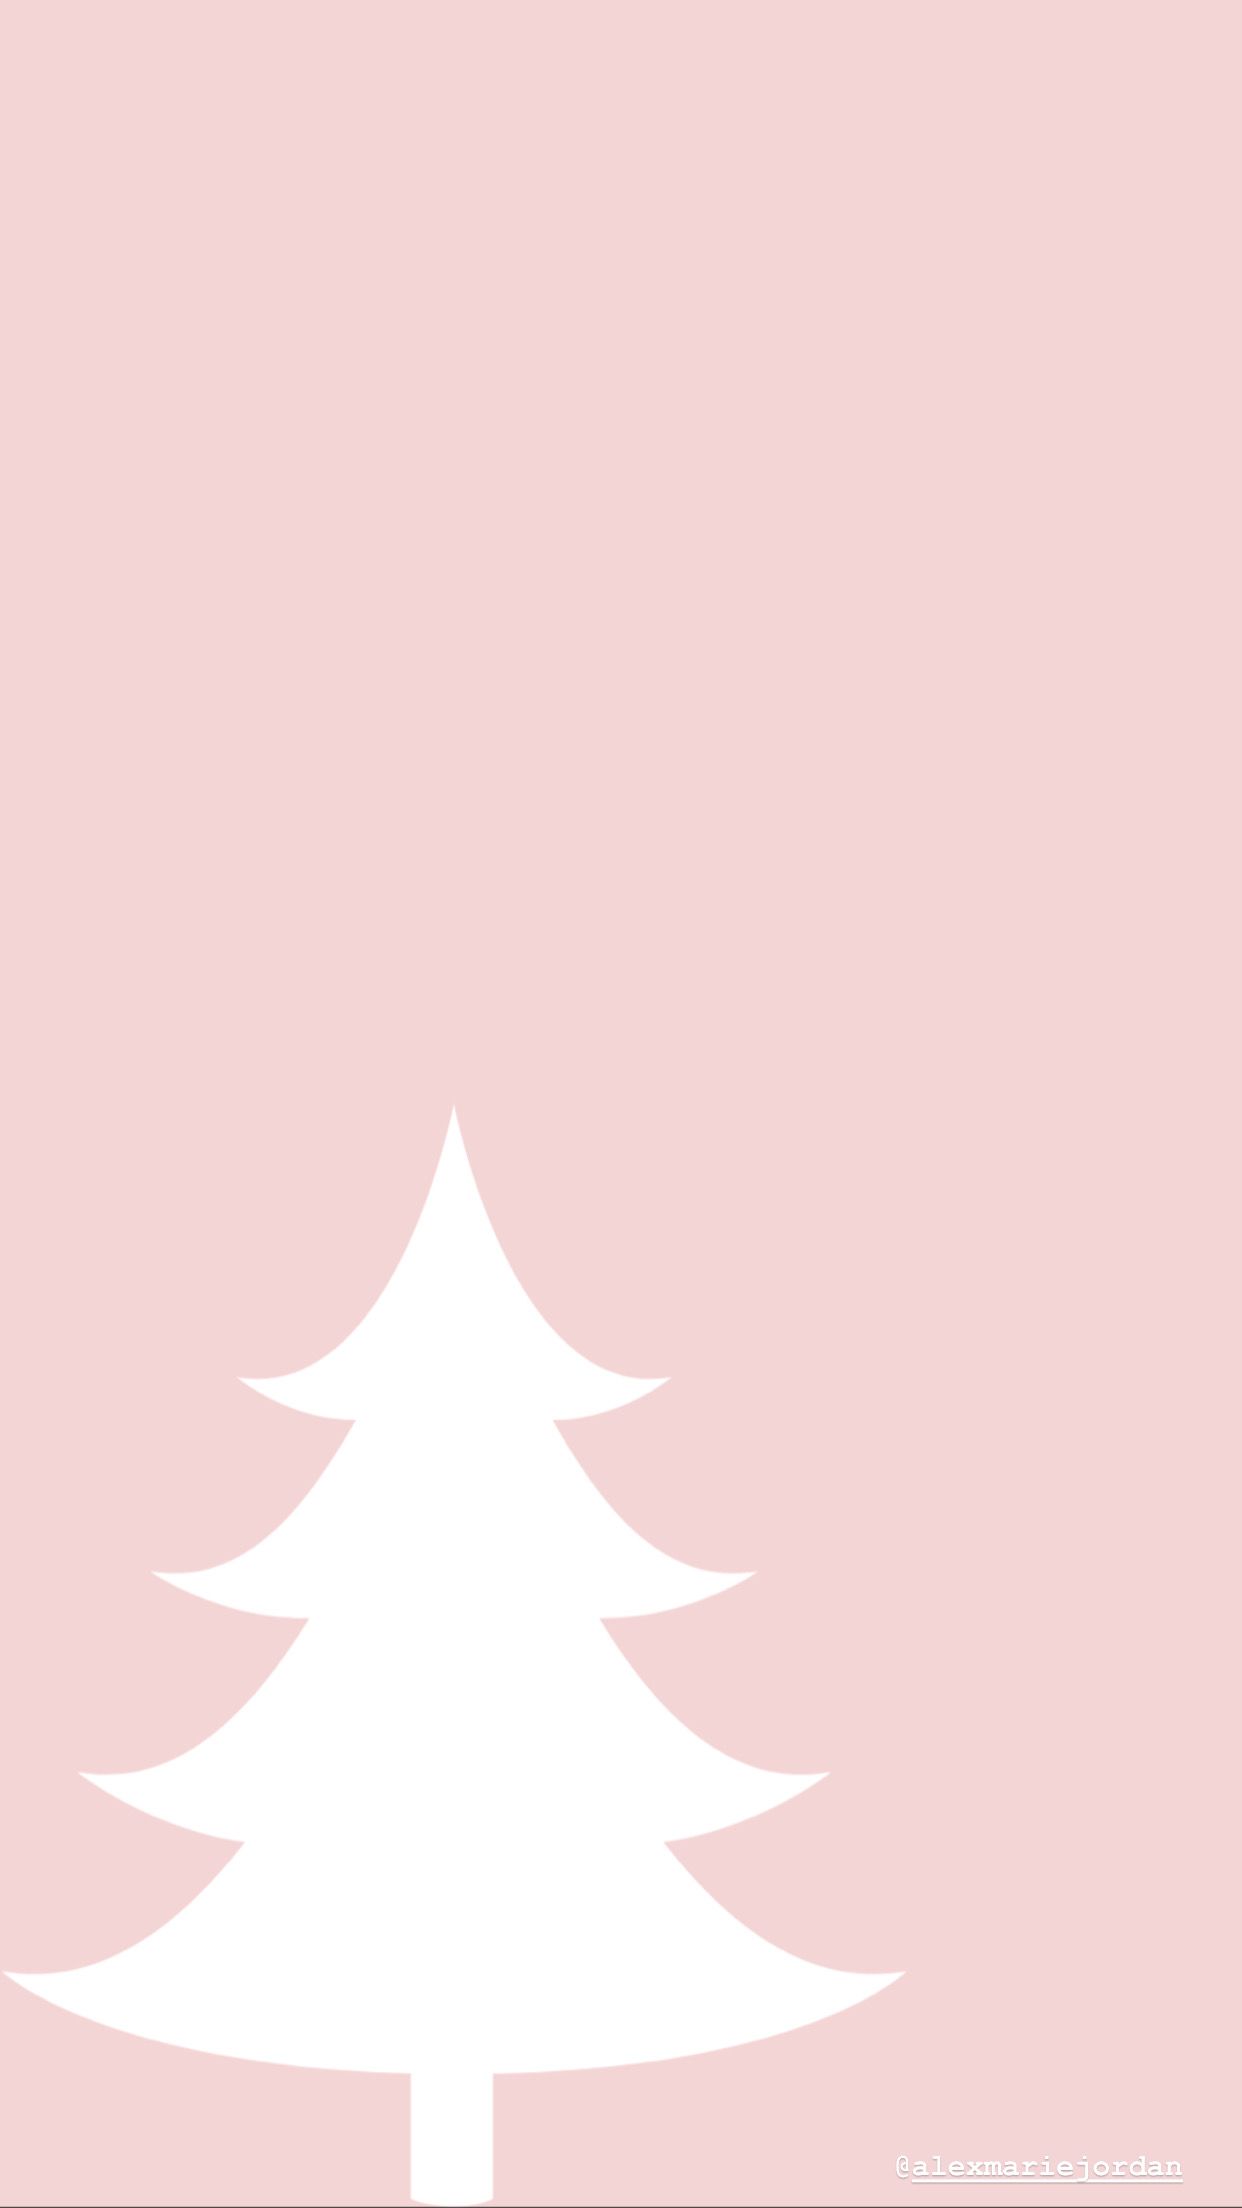 Home Page. Christmas tree wallpaper, Christmas tree wallpaper iphone, Pink christmas tree